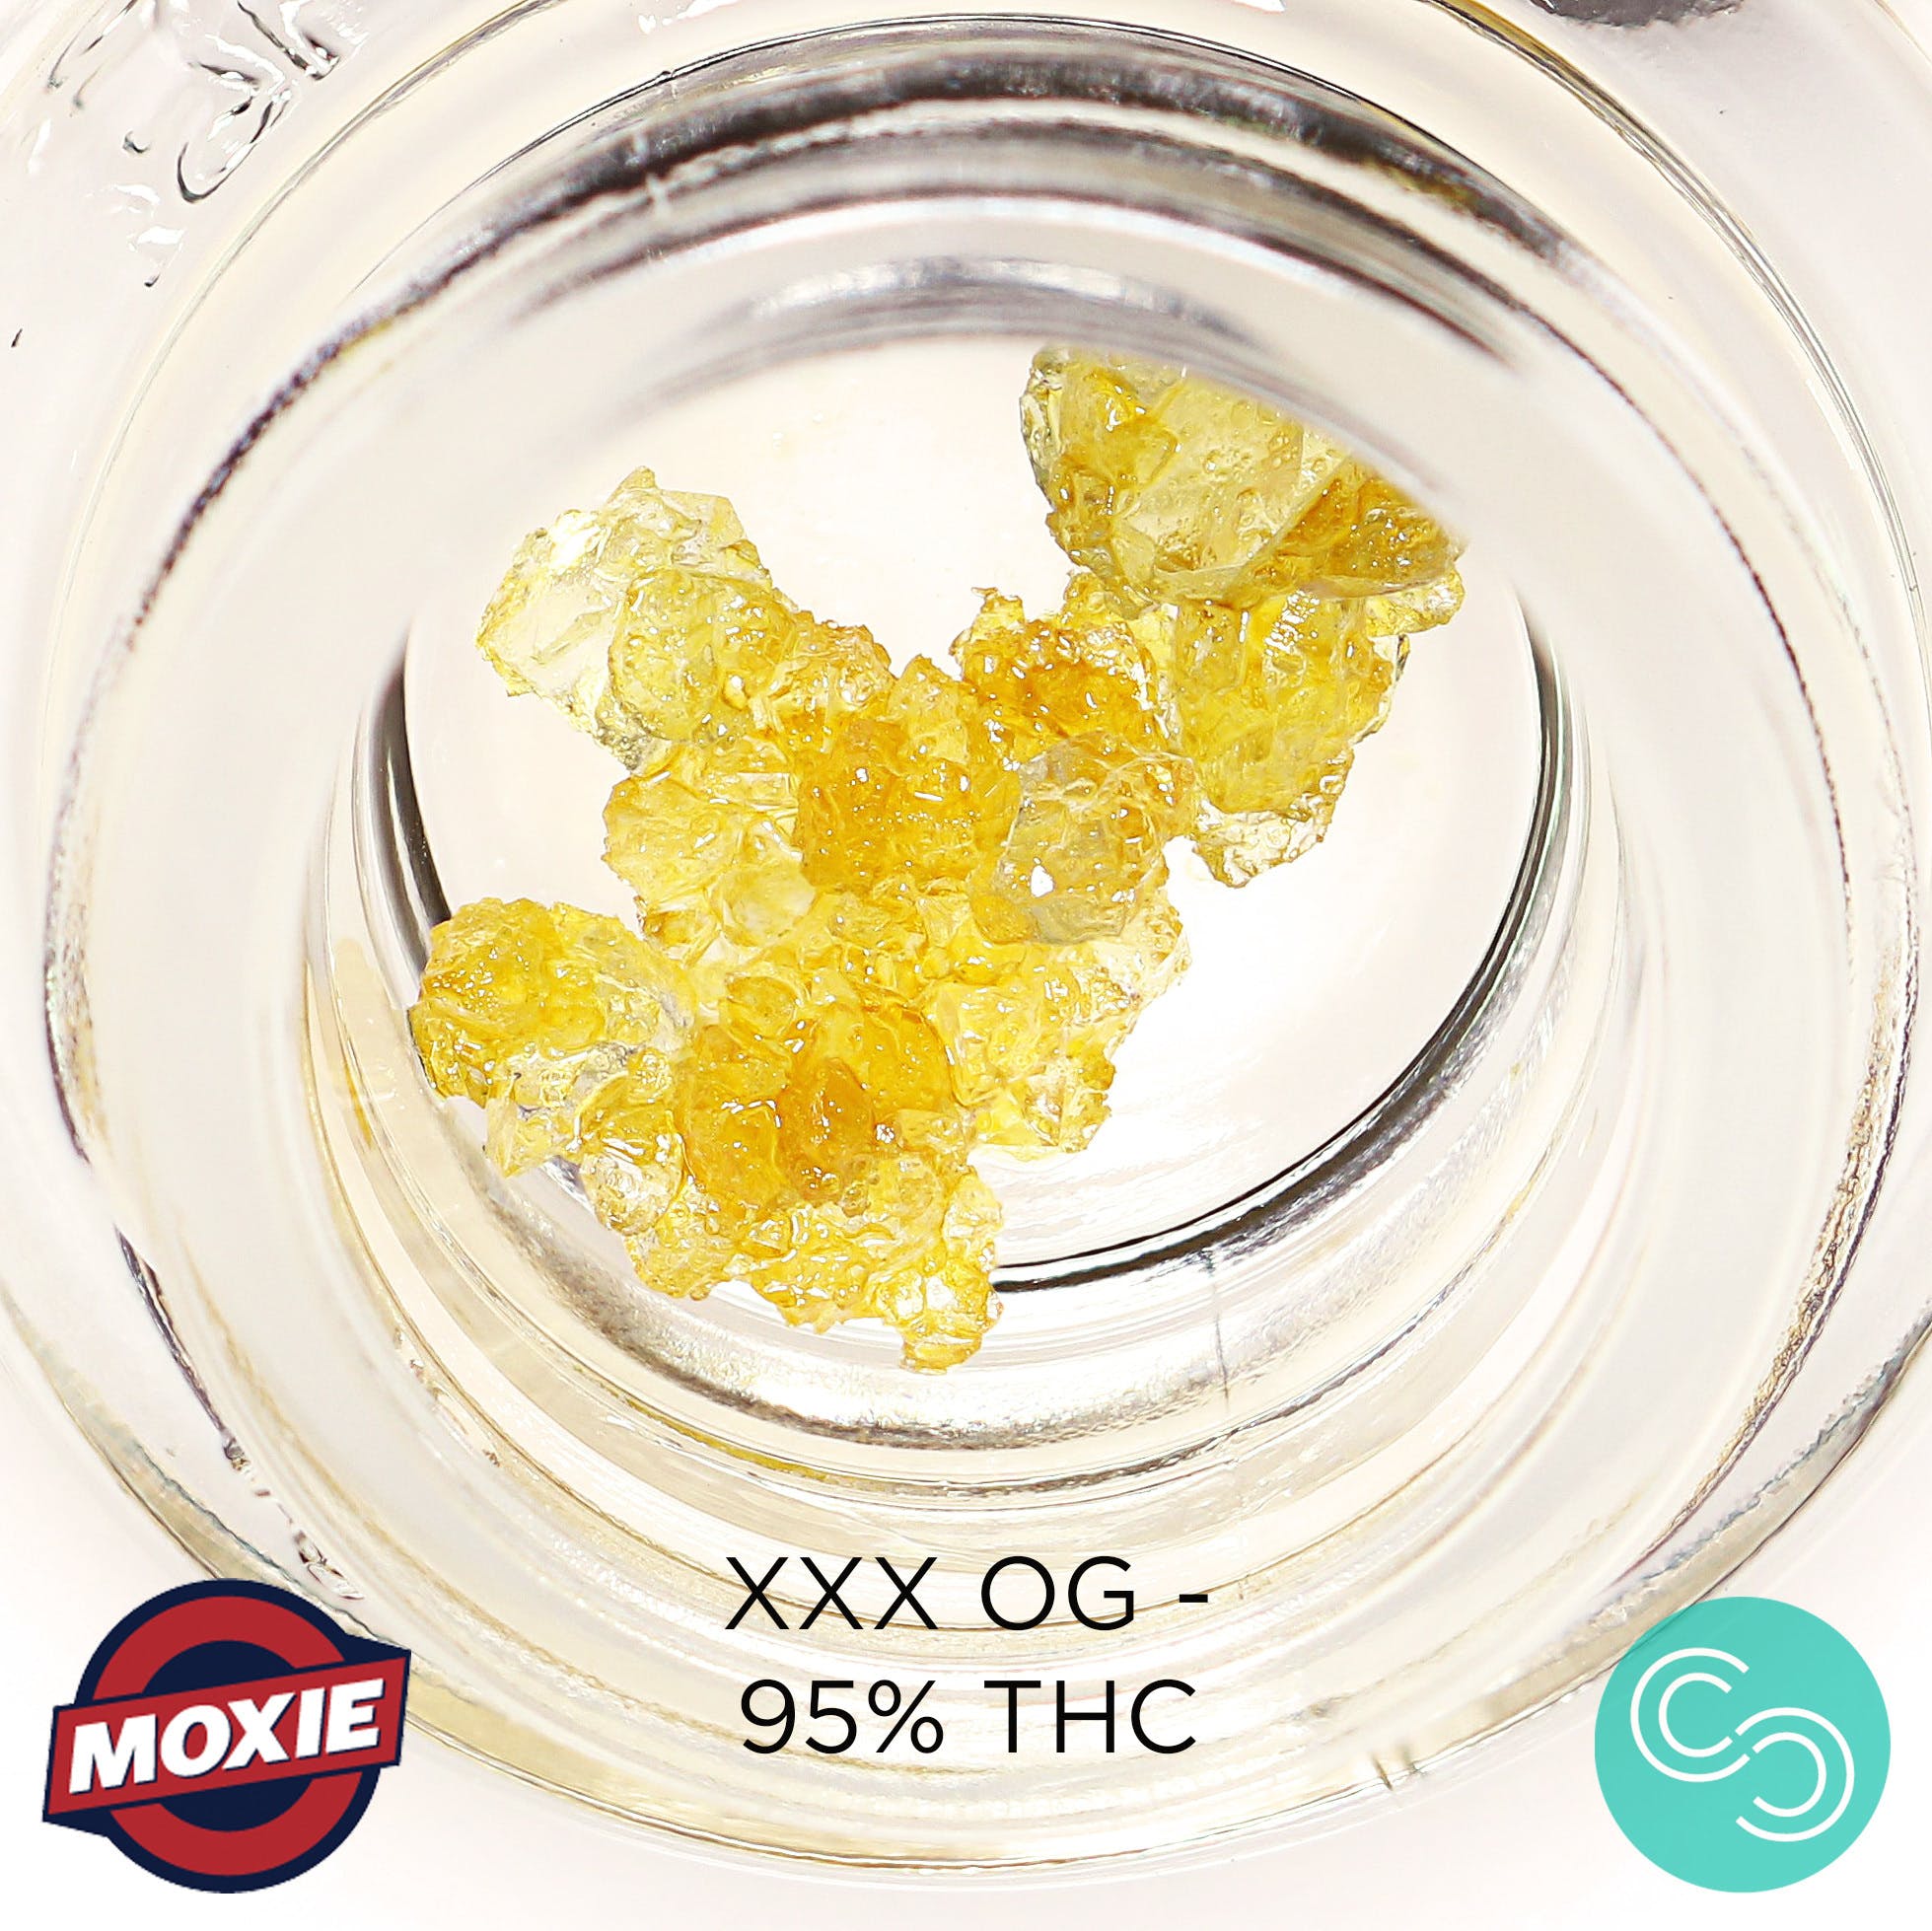 Moxie - XXX OG - 95% THC